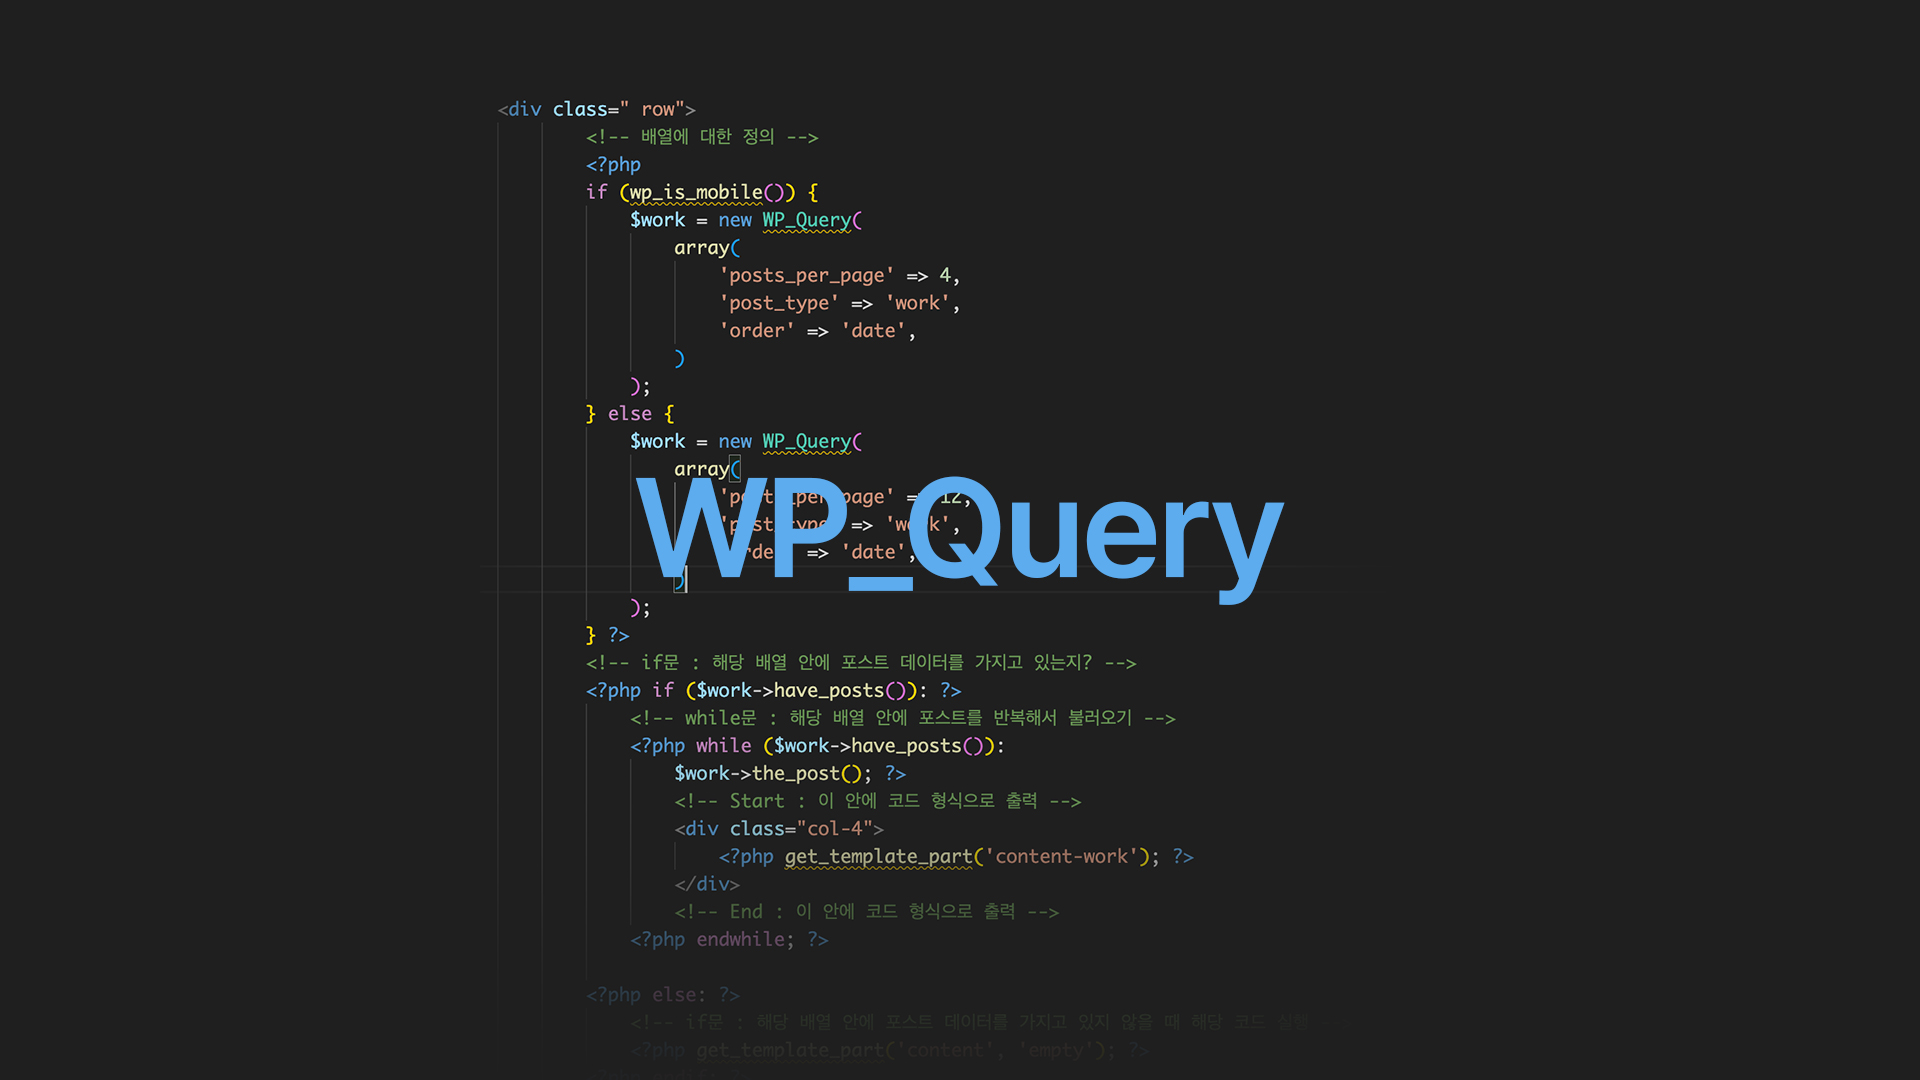 워드프레스 고급 강의 - wp query